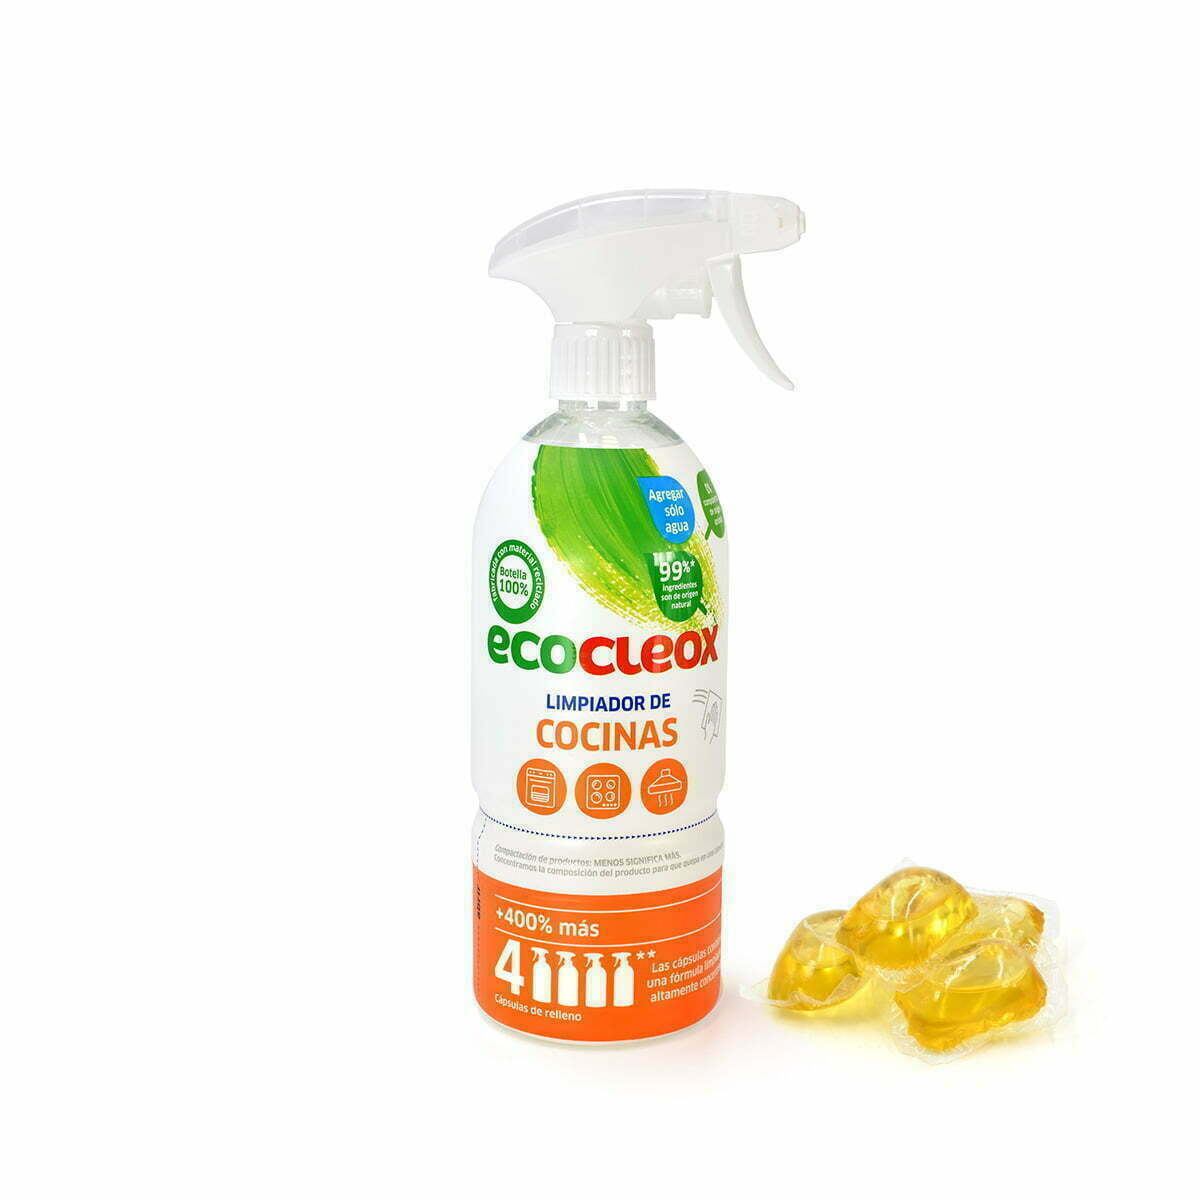 Åšrodek do czyszczenia kuchni - ECOCLEOX 500 ml